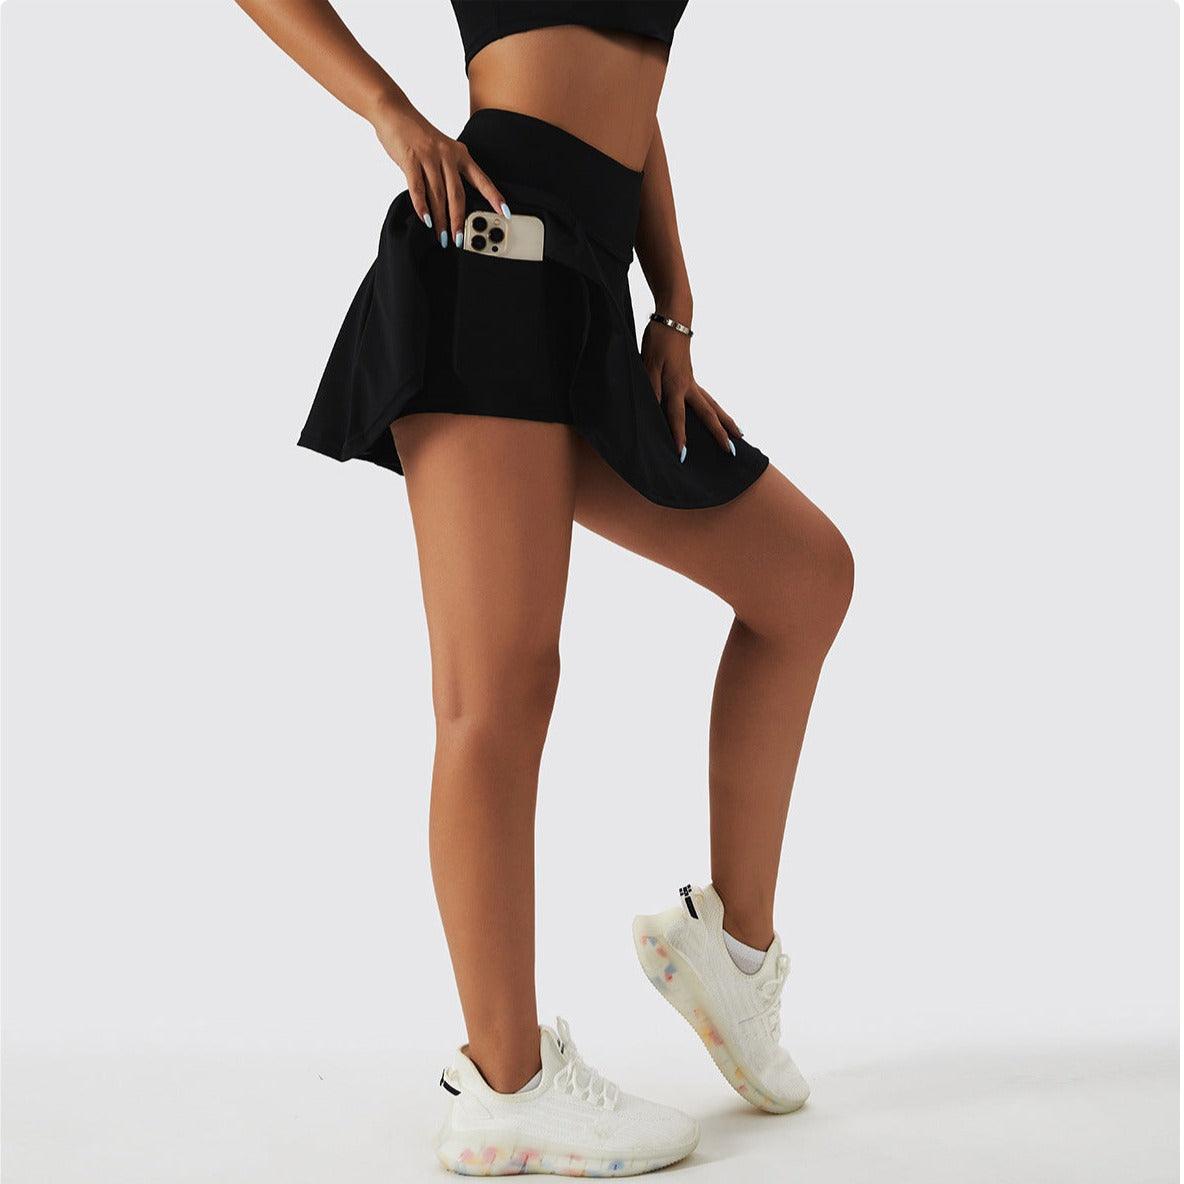 Balerz Women Tennis Sports Skirt and Crop Top Tennis Athletes Golf T-Shirt Fitness Set